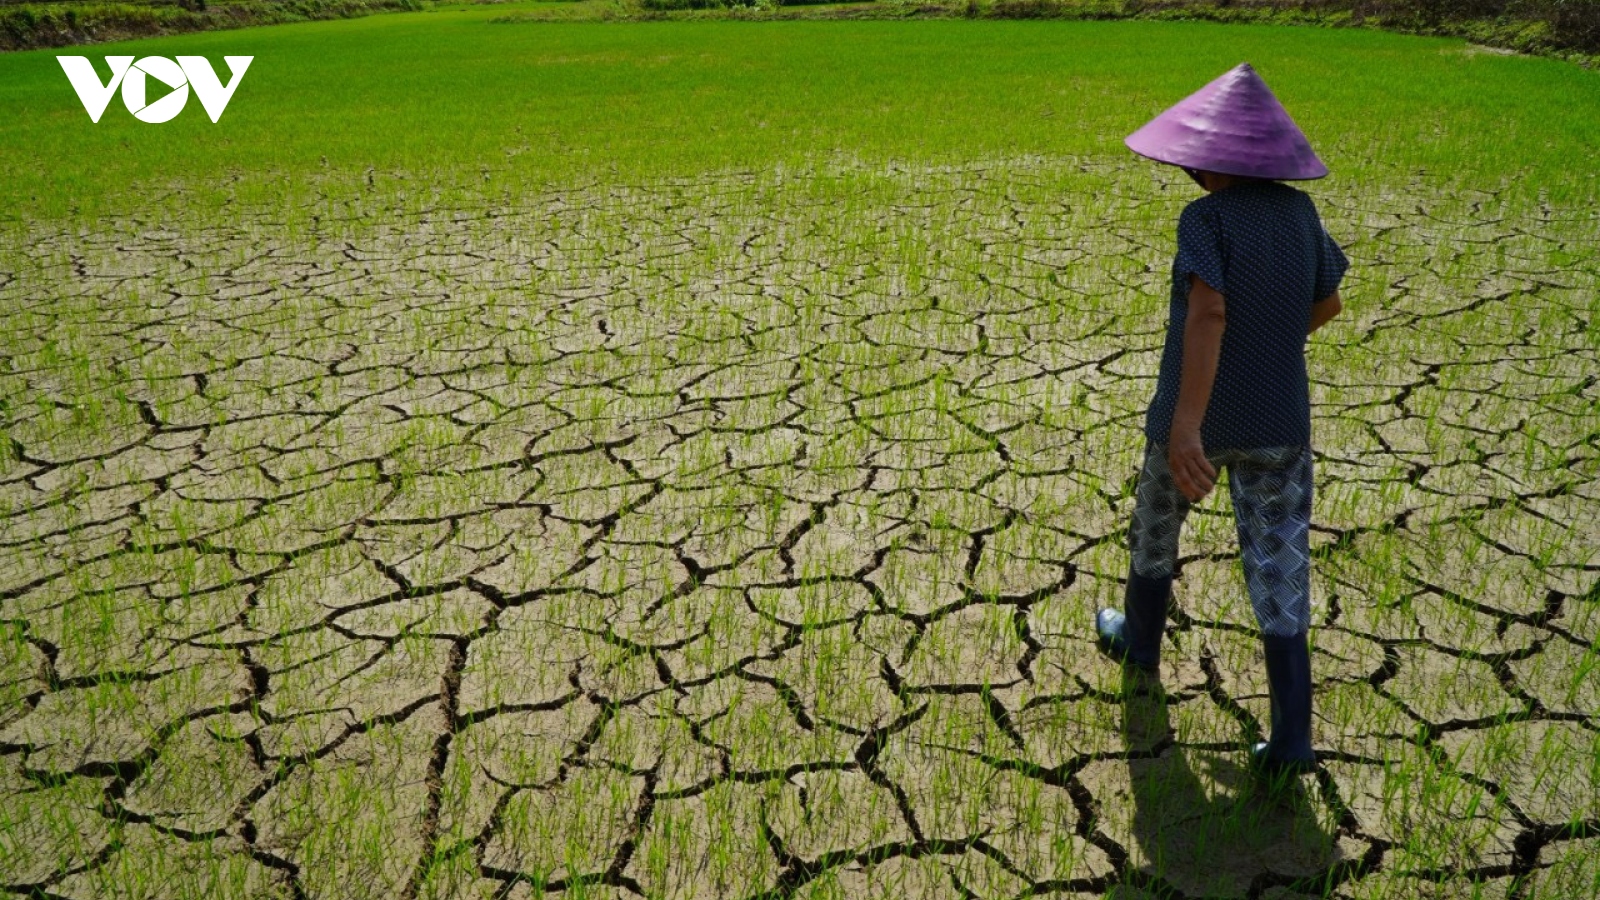 Hạn hán ở Gia Lai khiến hàng chục nghìn ha cây trồng bị thiệt hại